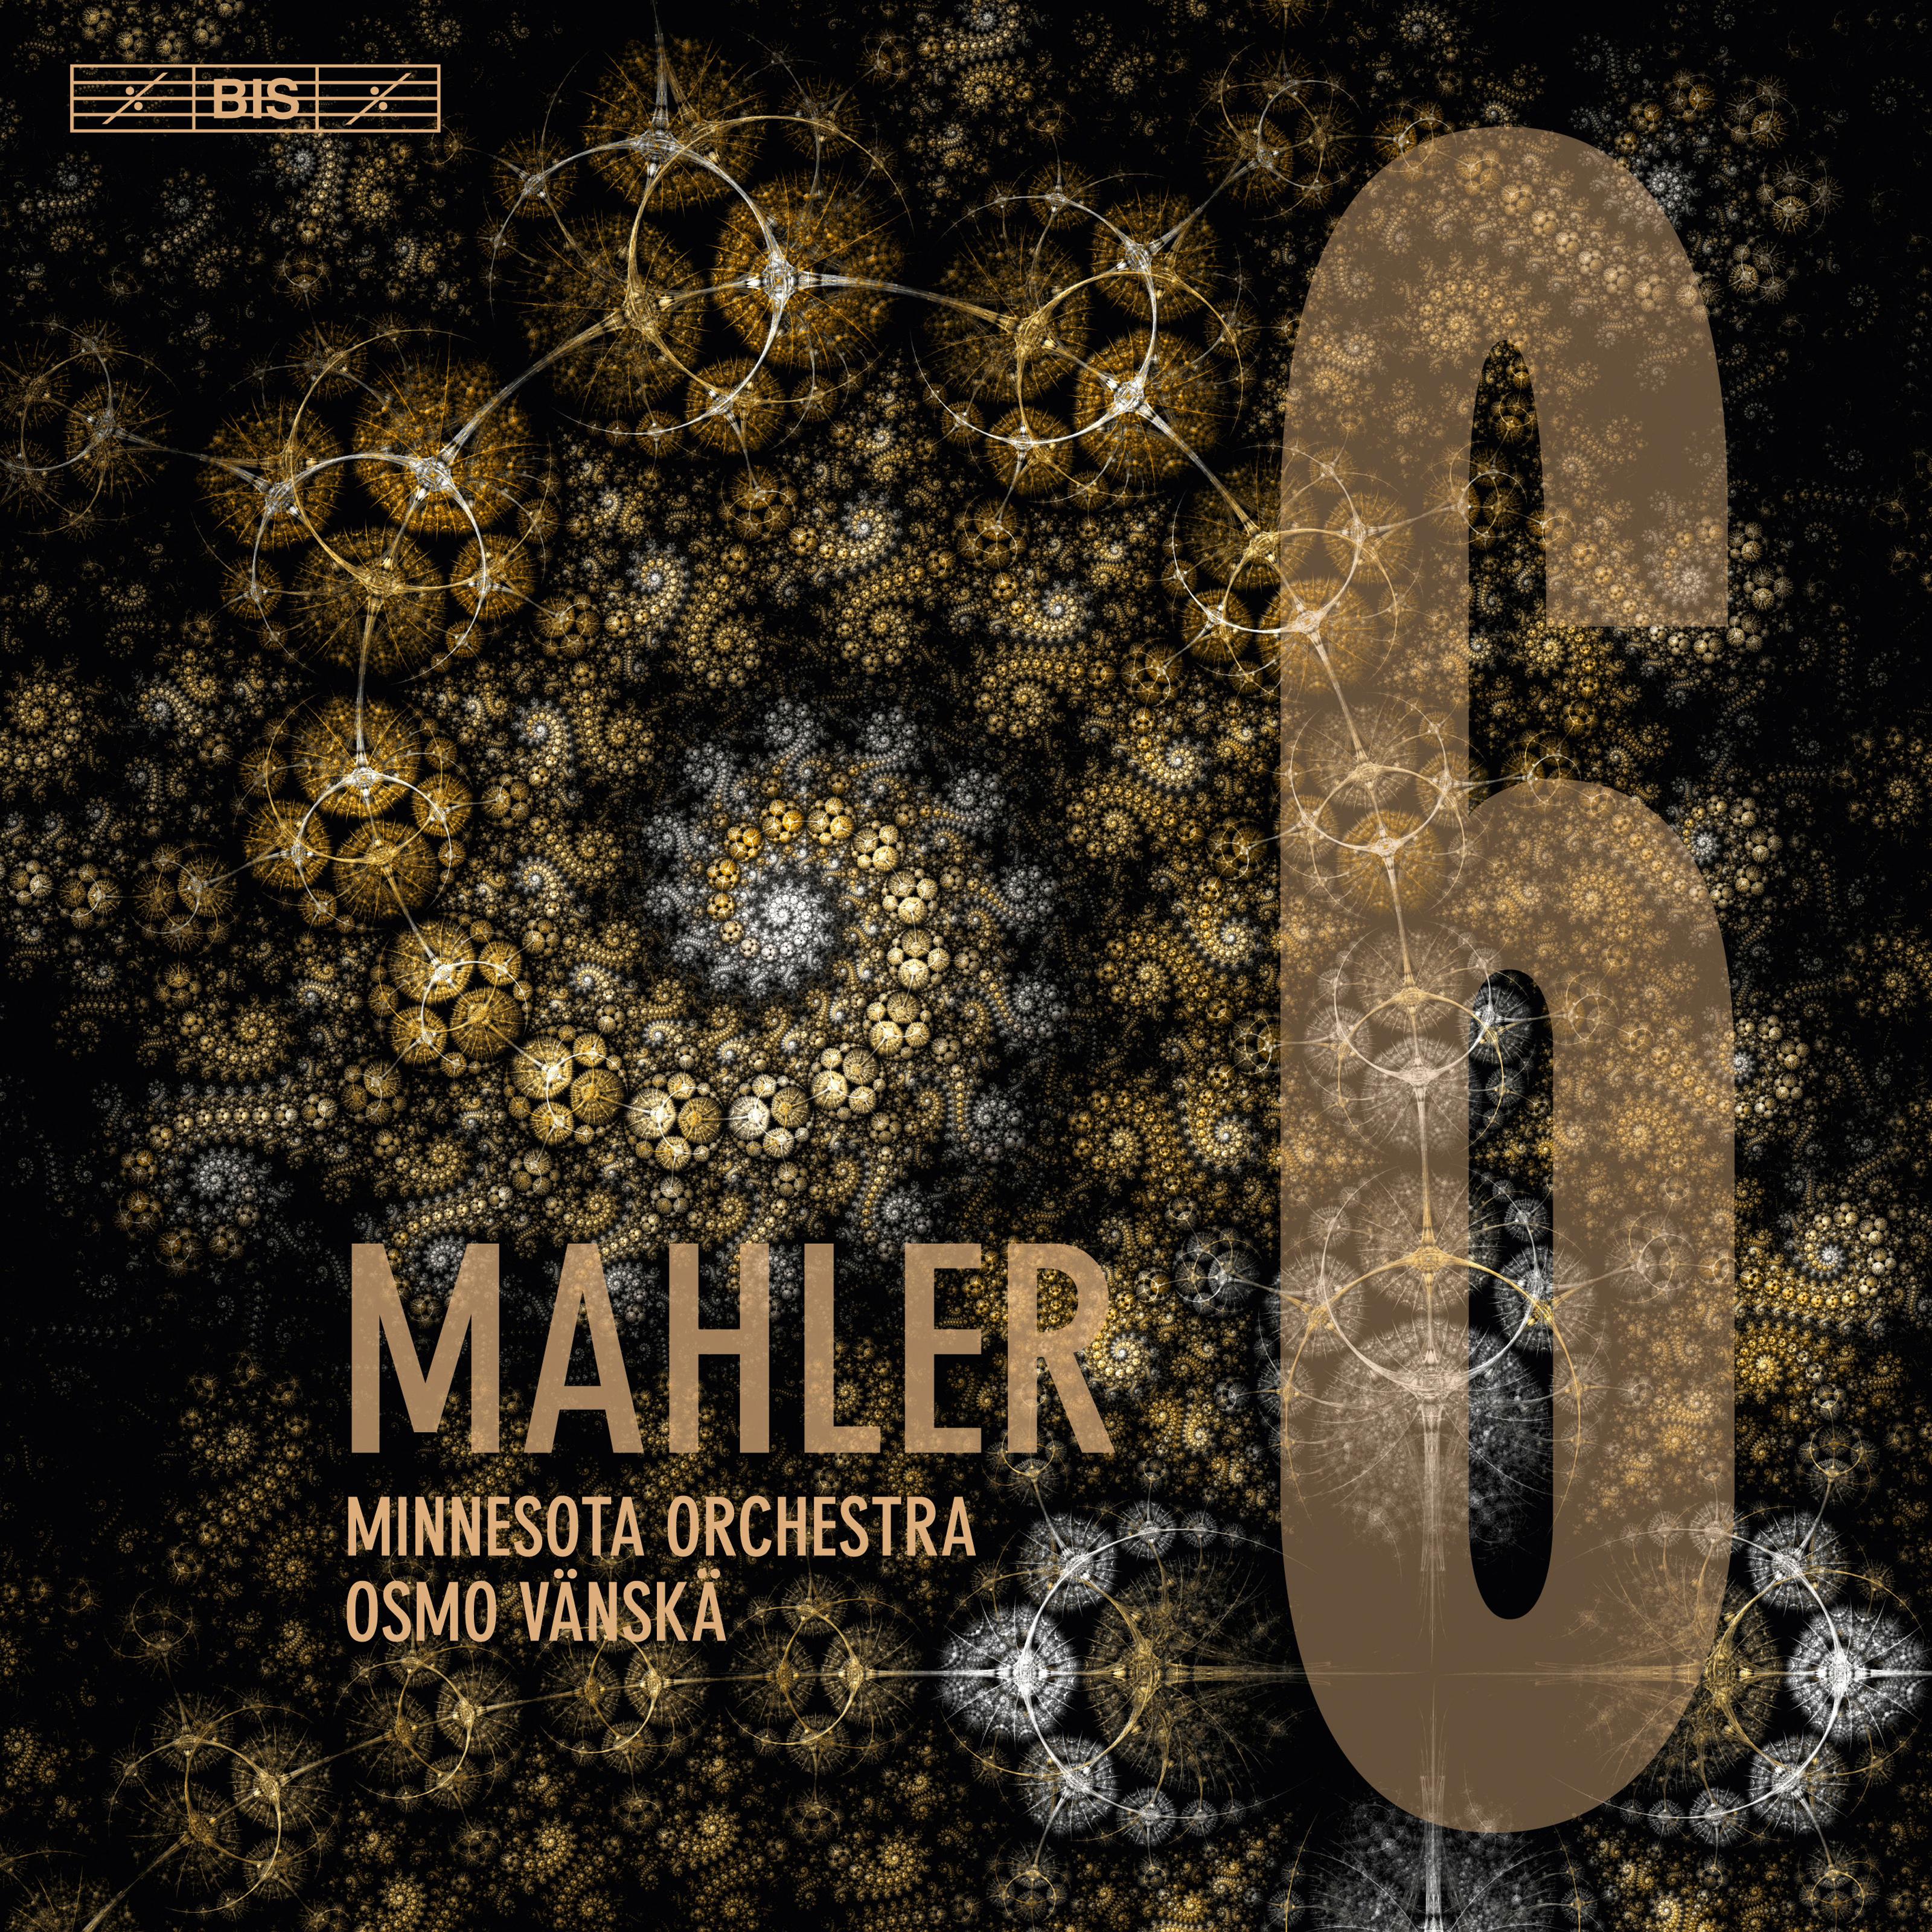 Mahler: Symphony No. 6 in A Minor "Tragic"